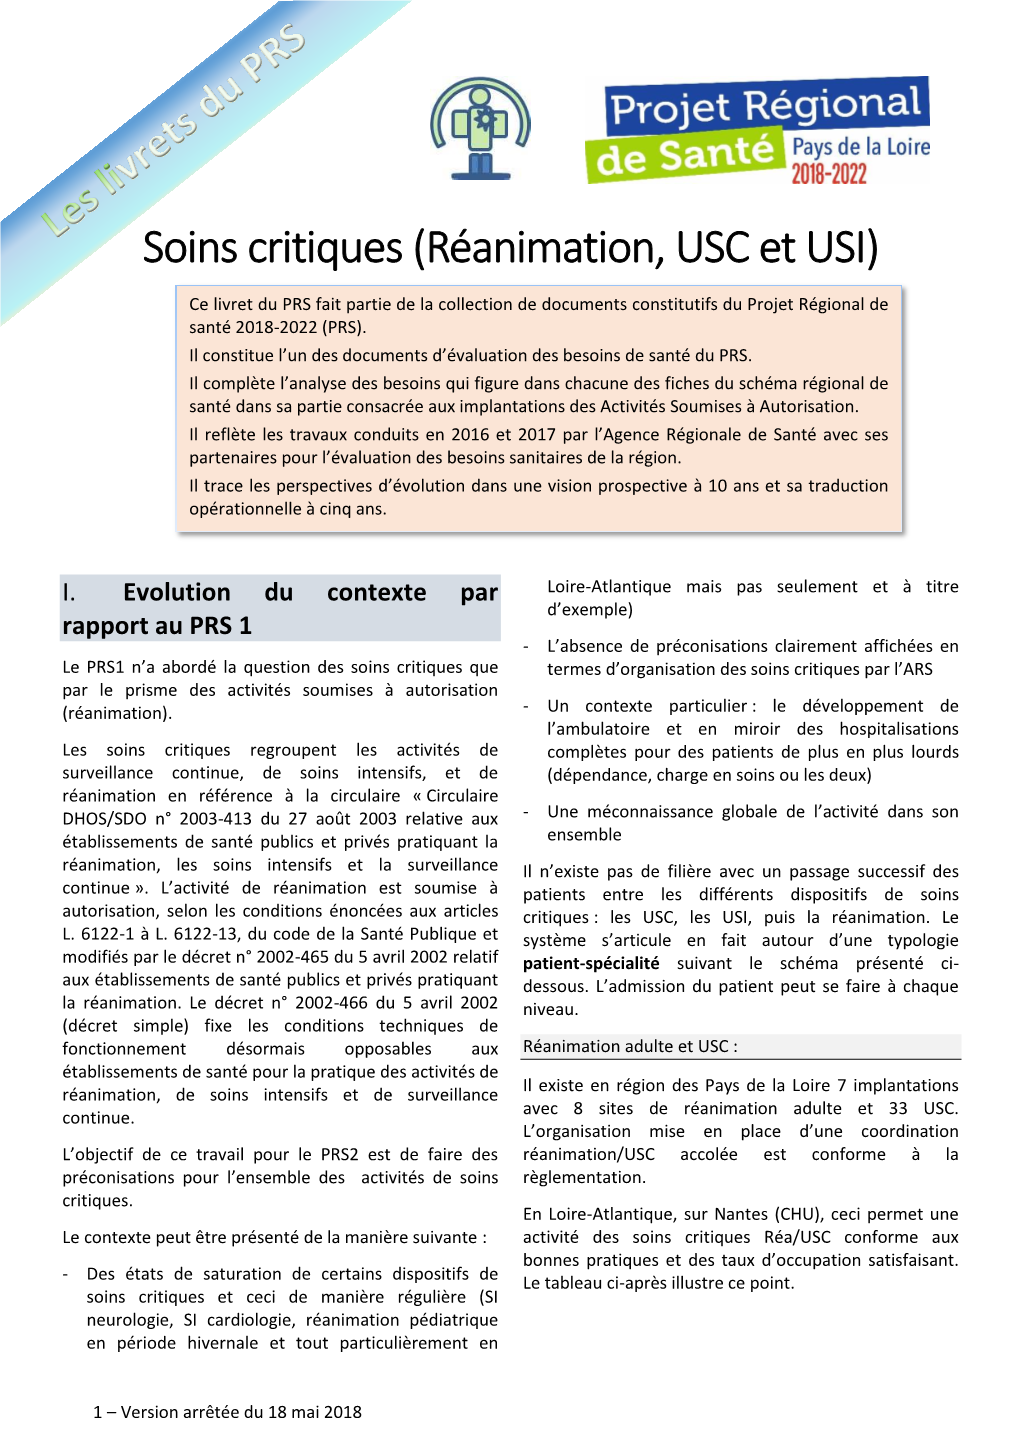 Soins Critiques (Réanimation, USC Et USI)